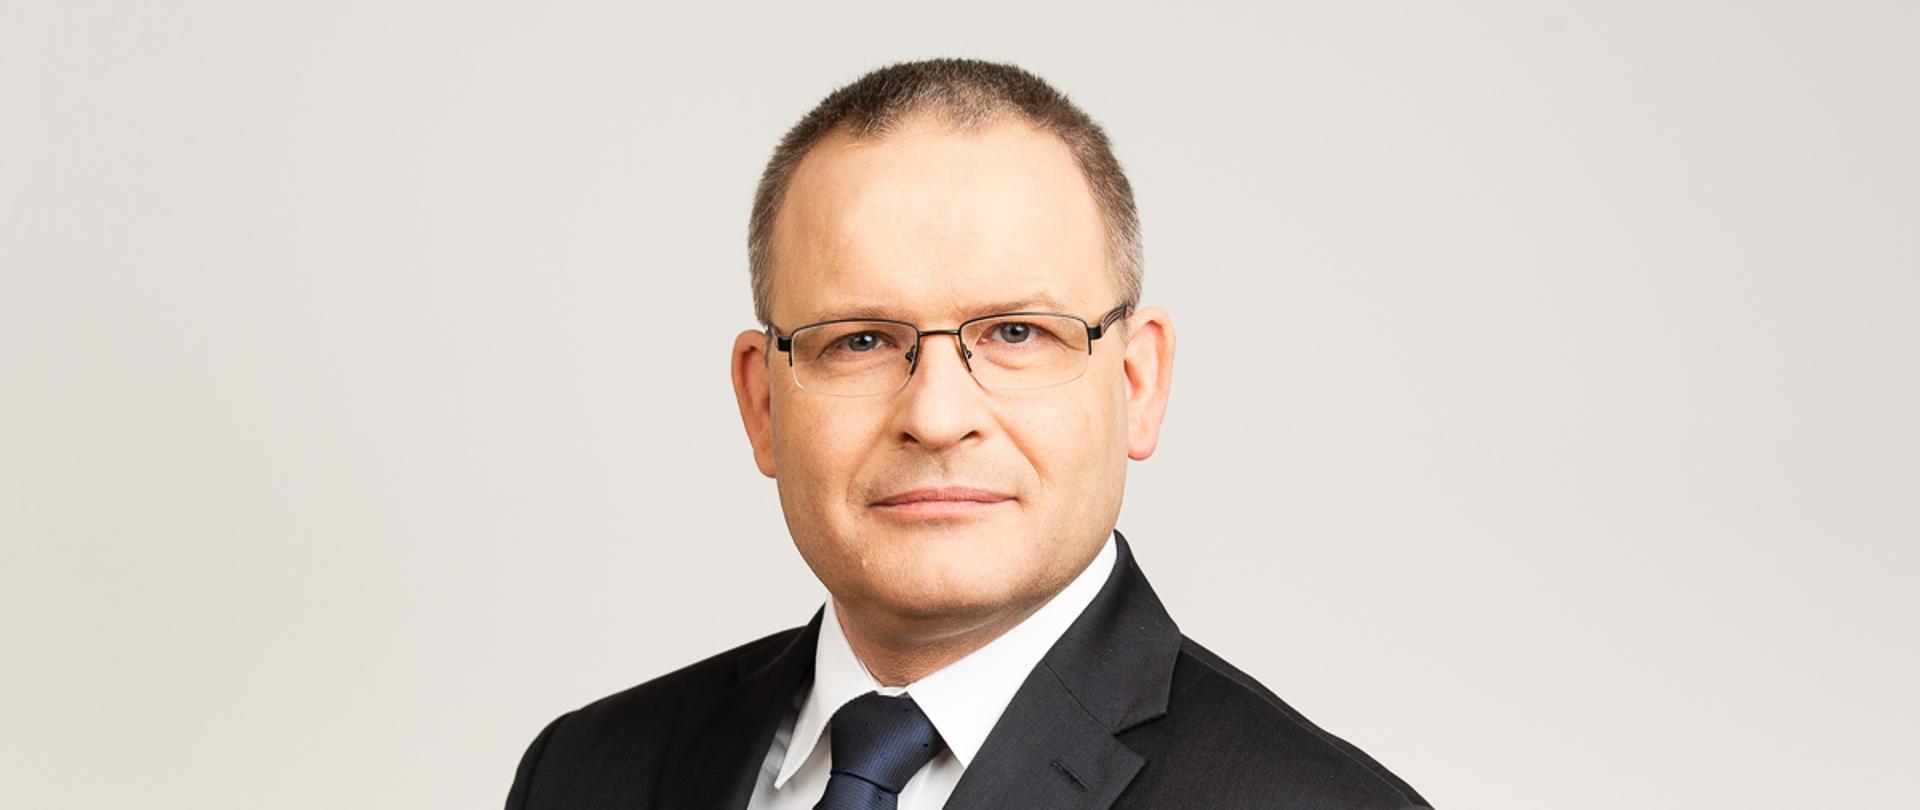 Maciej Miłkowski